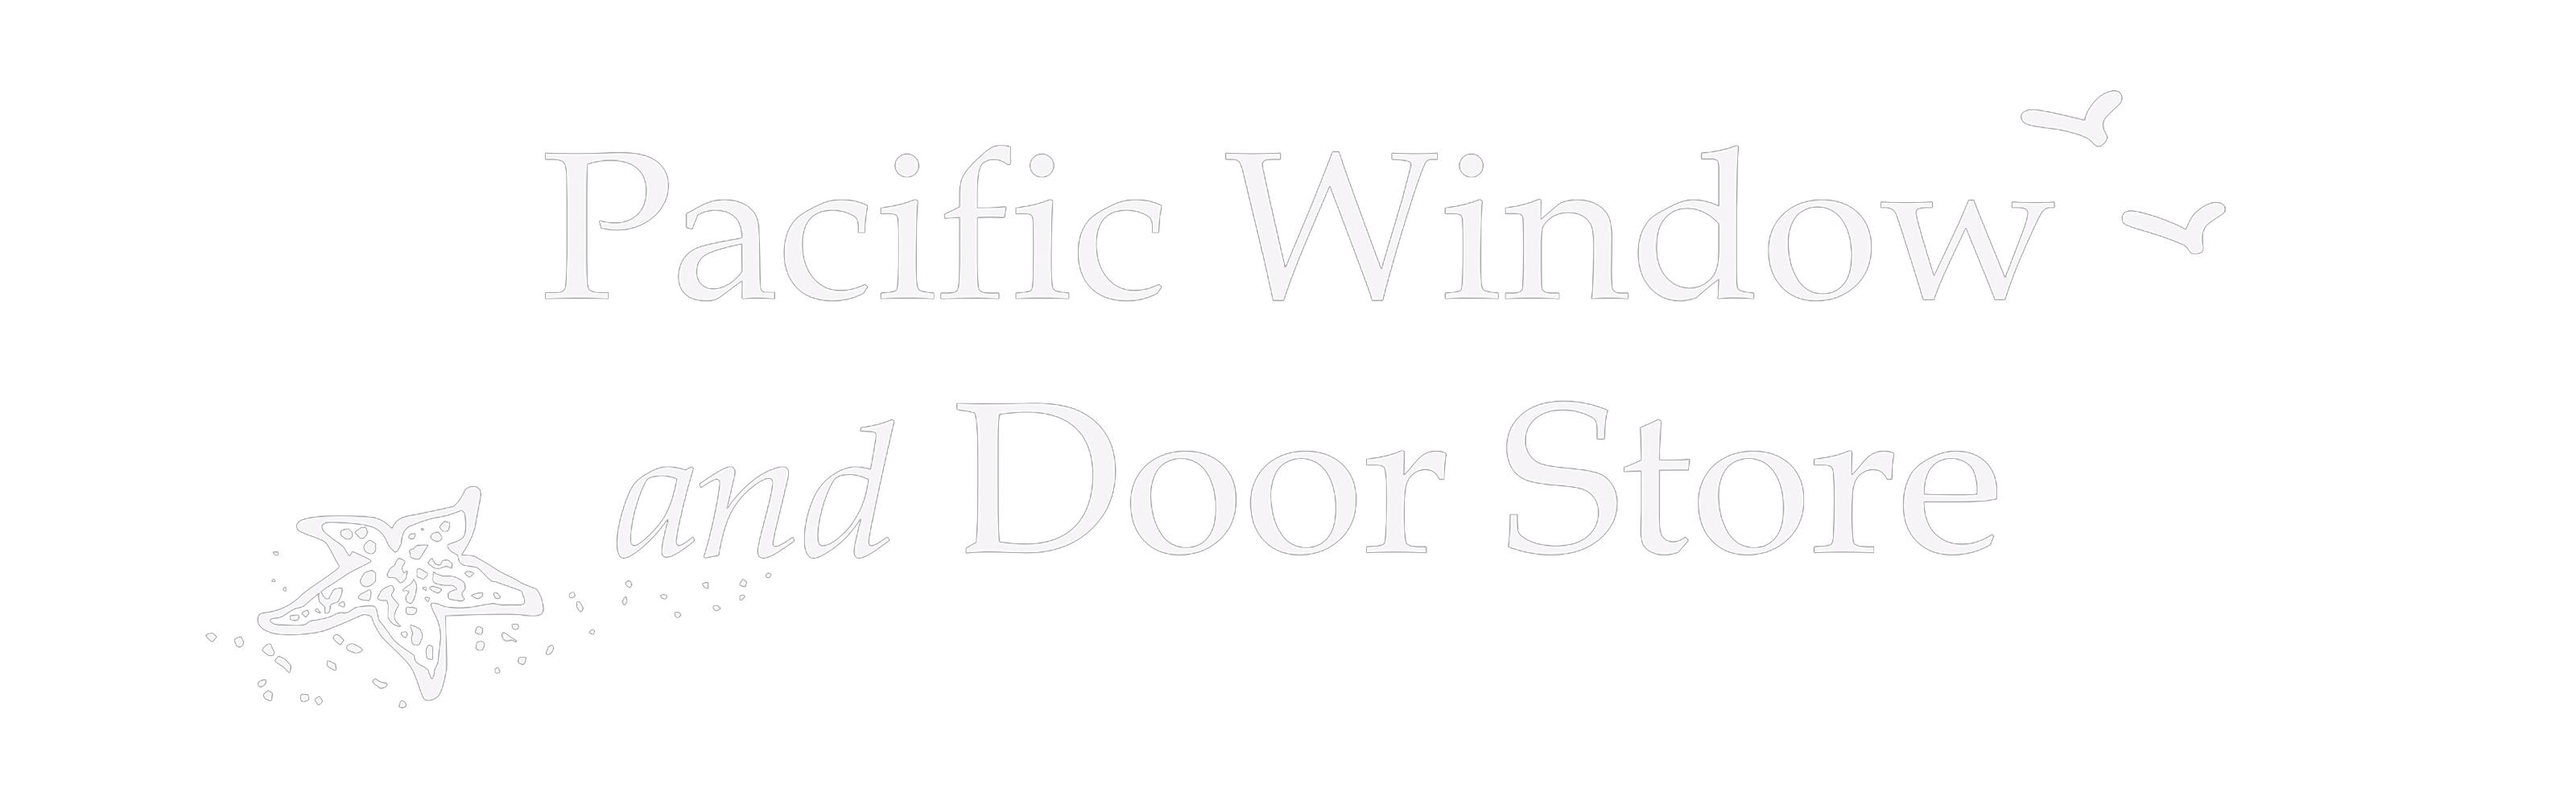 Pacific Window and Door Store Logo